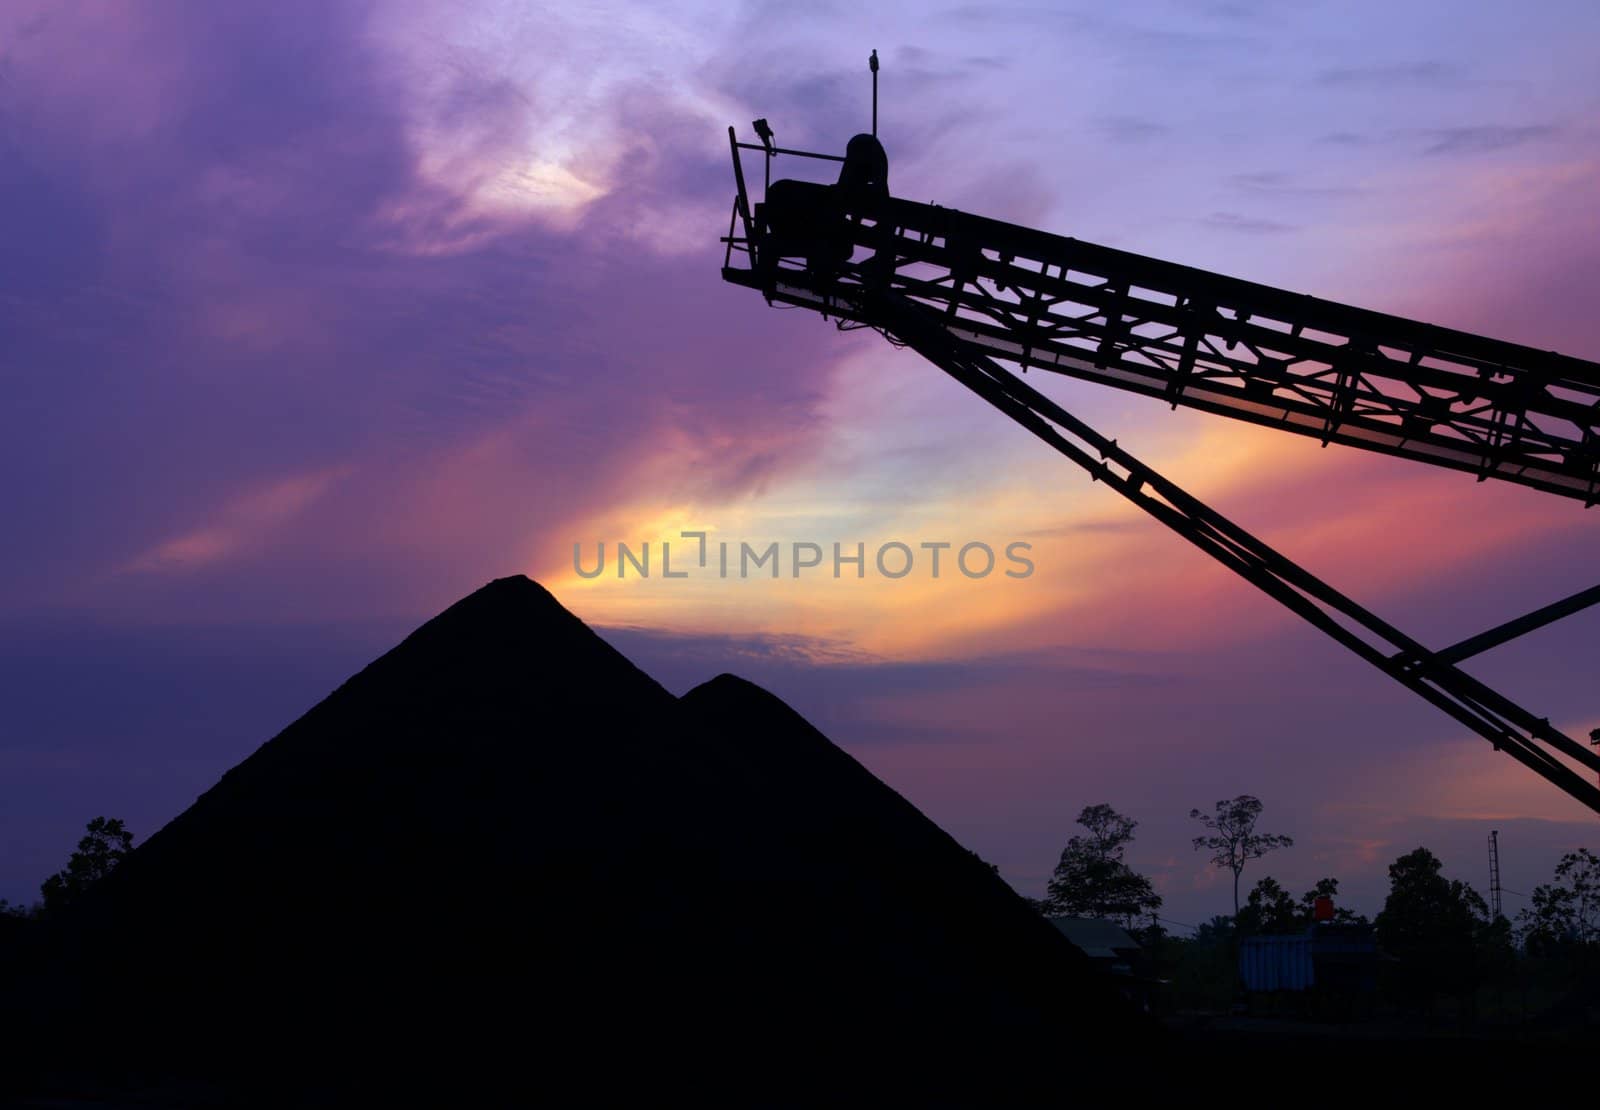 Mining landscape by photosoup